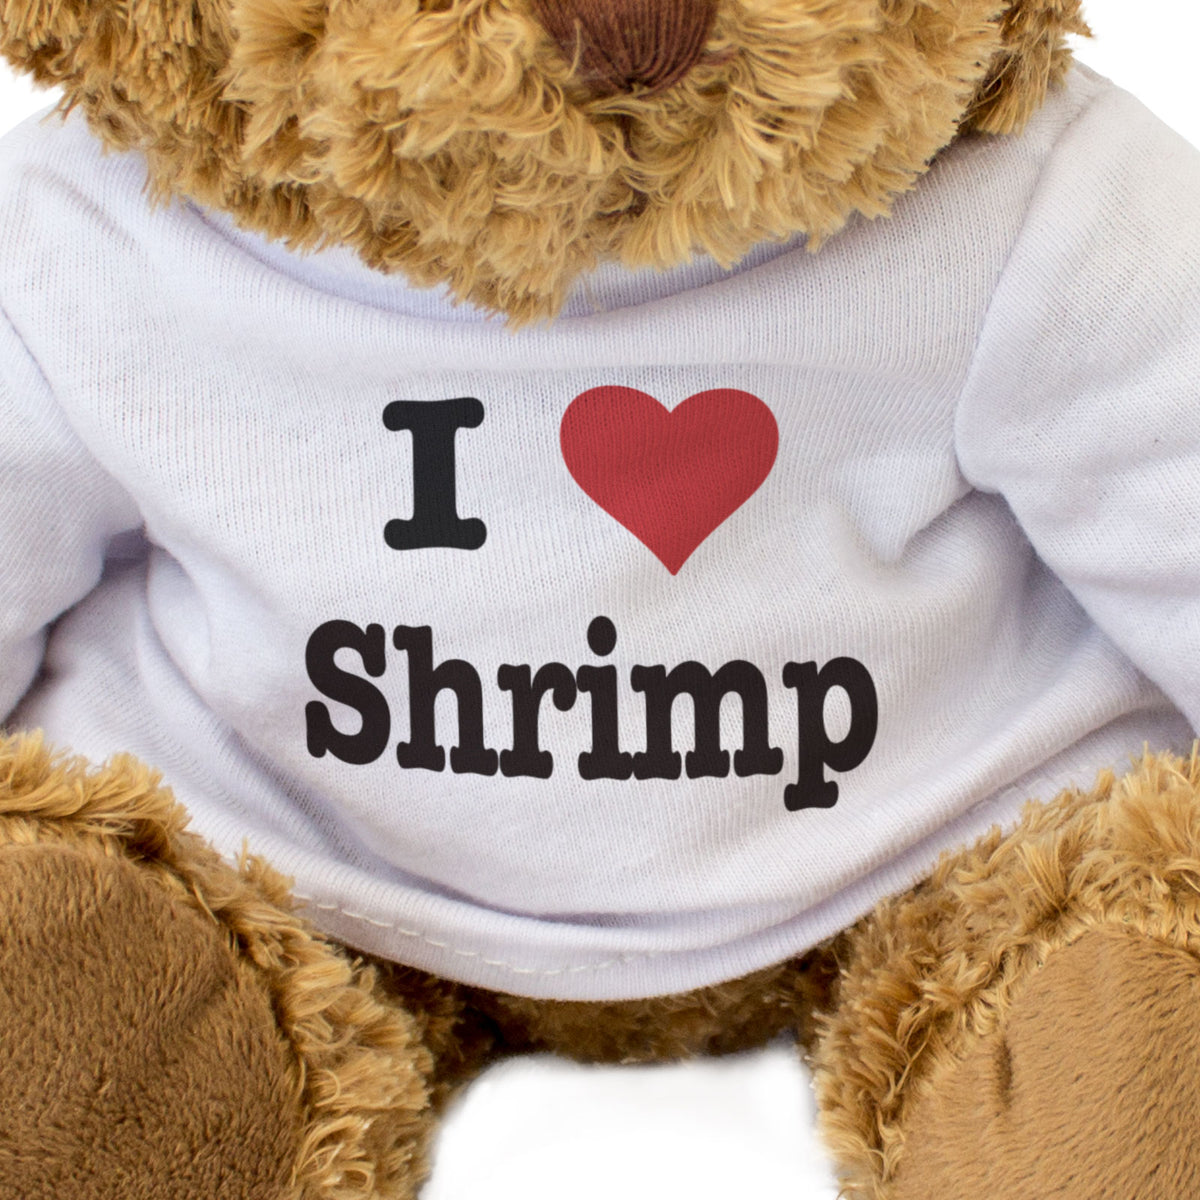 I Love Shrimp - Teddy Bear